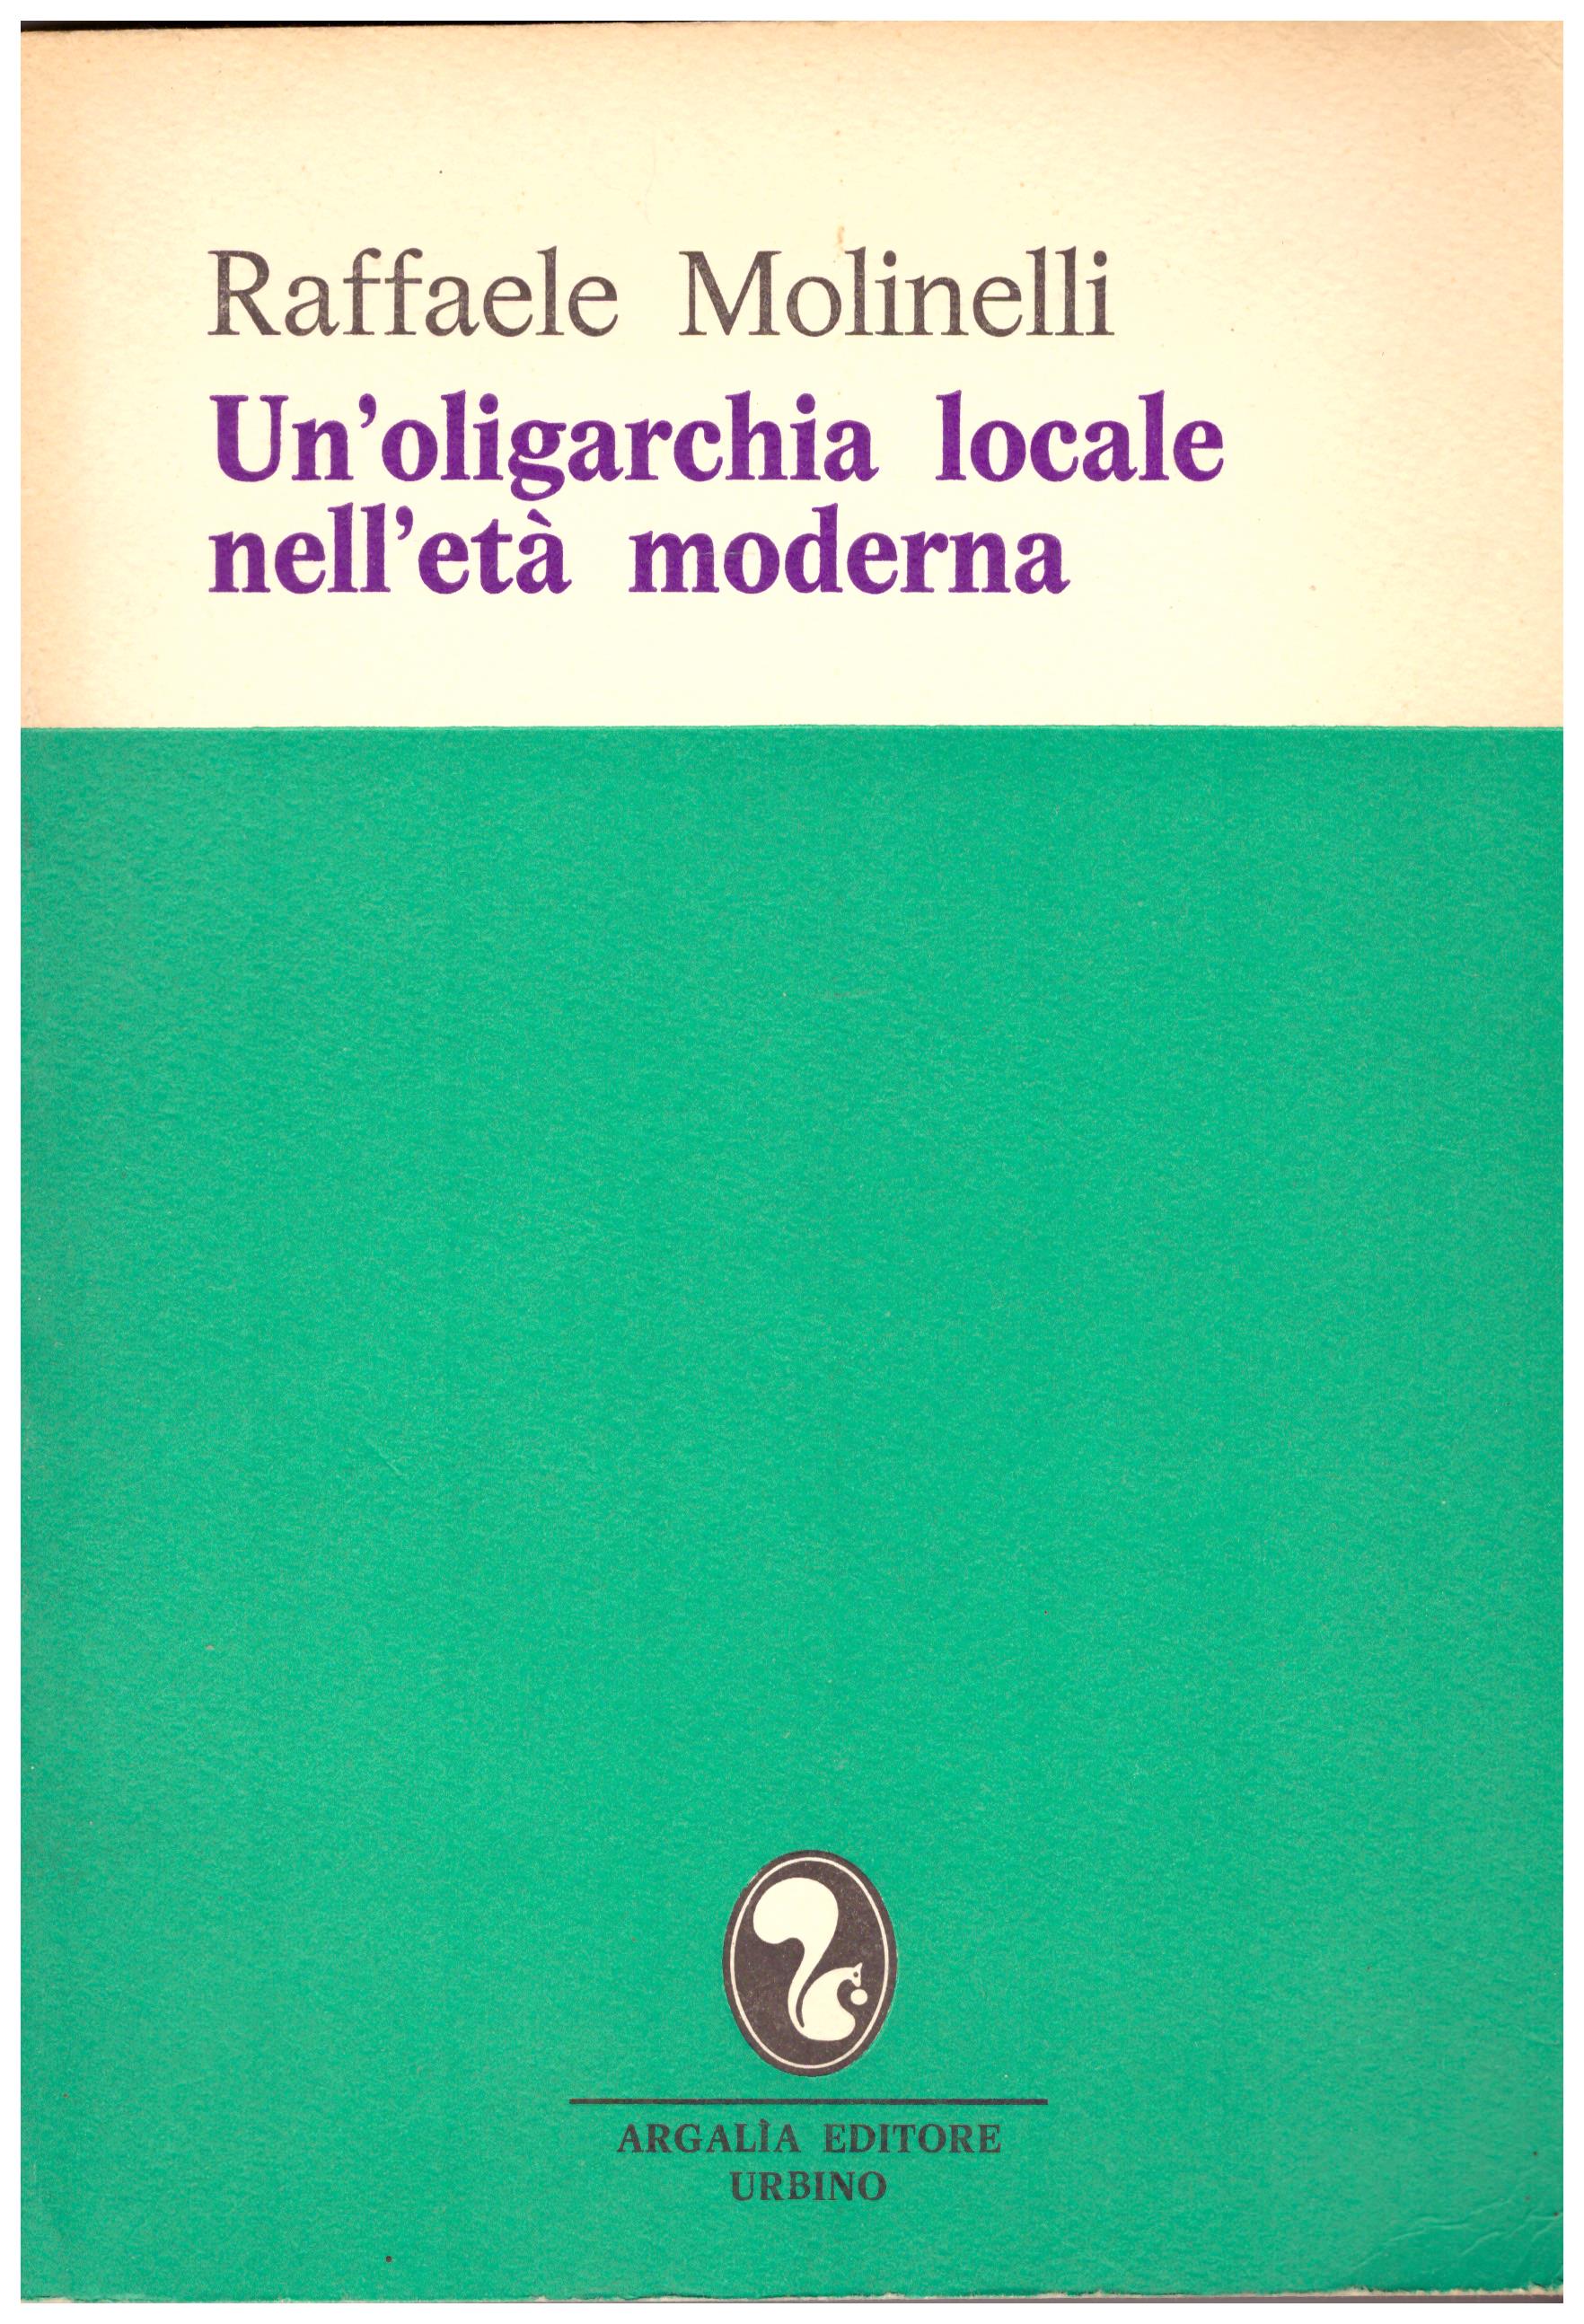 Titolo:Un'oligarchia locale nell'età moderna    Autore: Raffaele Molinellli    Editore:Argalia Editore Urbino